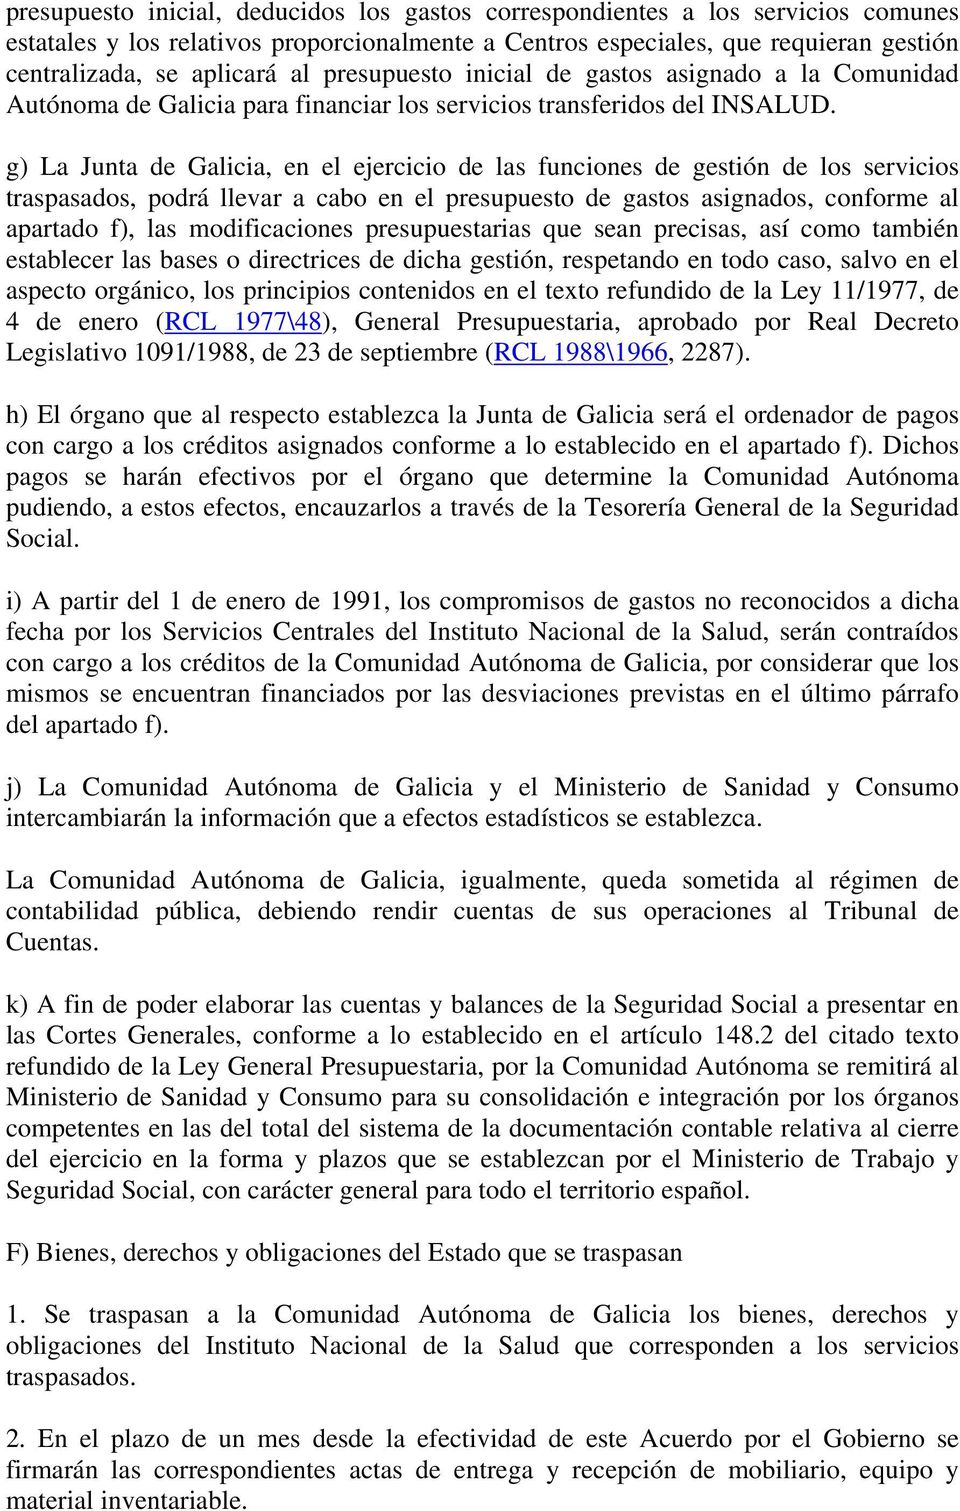 g) La Junta de Galicia, en el ejercicio de las funciones de gestión de los servicios traspasados, podrá llevar a cabo en el presupuesto de gastos asignados, conforme al apartado f), las